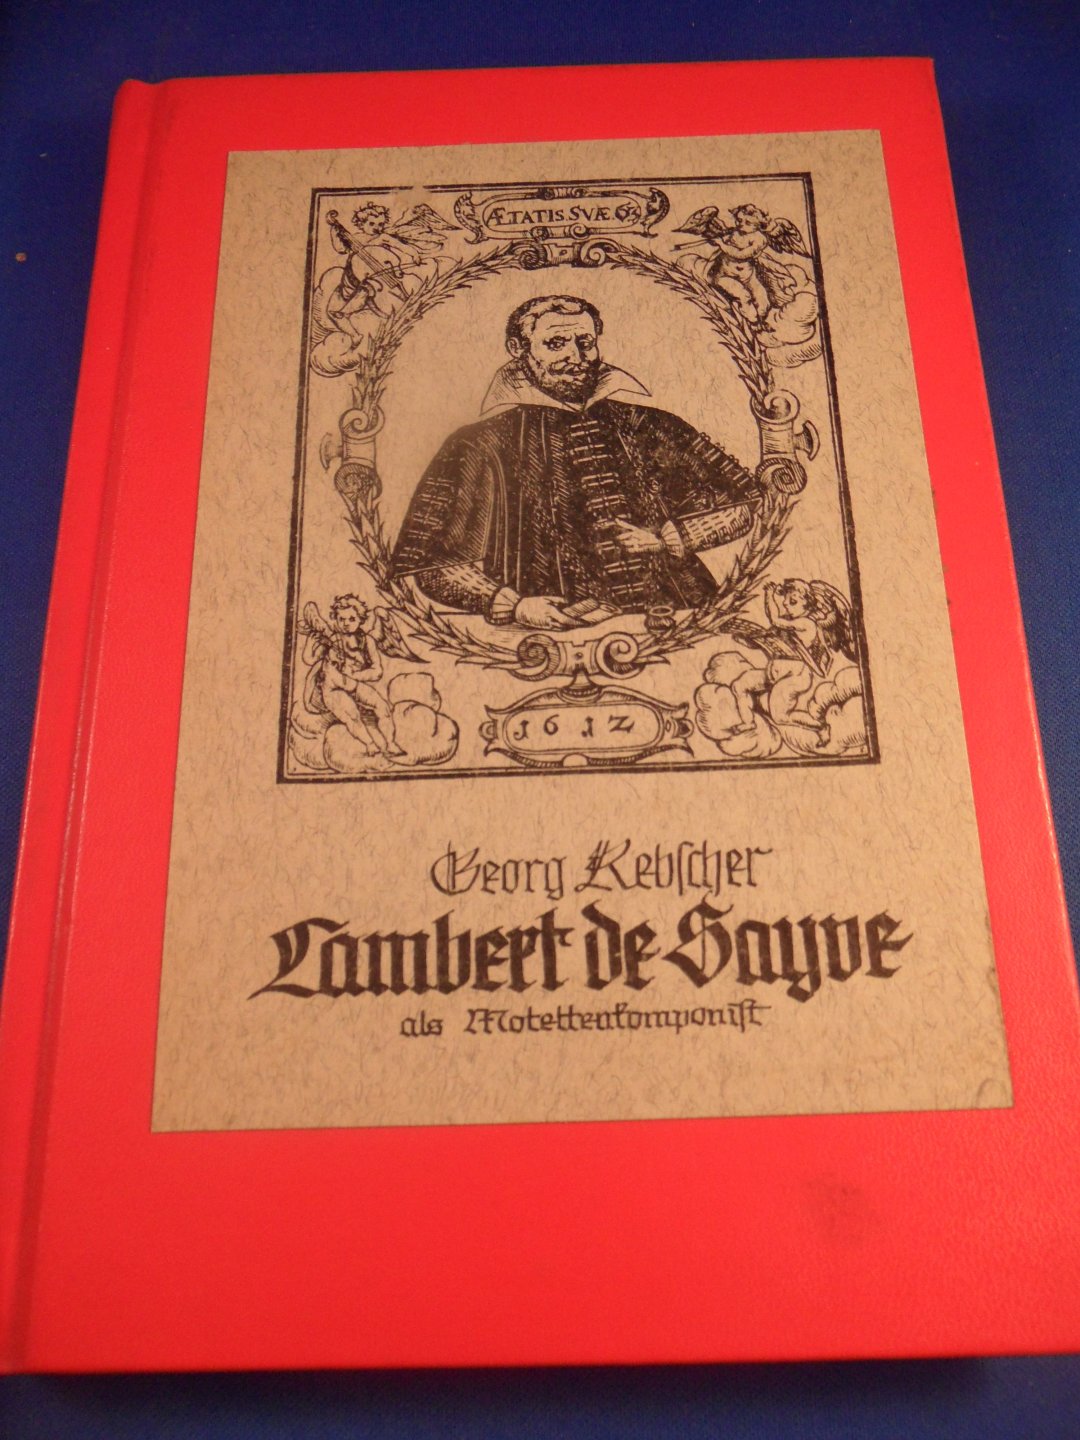 Rebscher, Georg - Lambert de Sayve als Motettenkomponist. Dissertatie